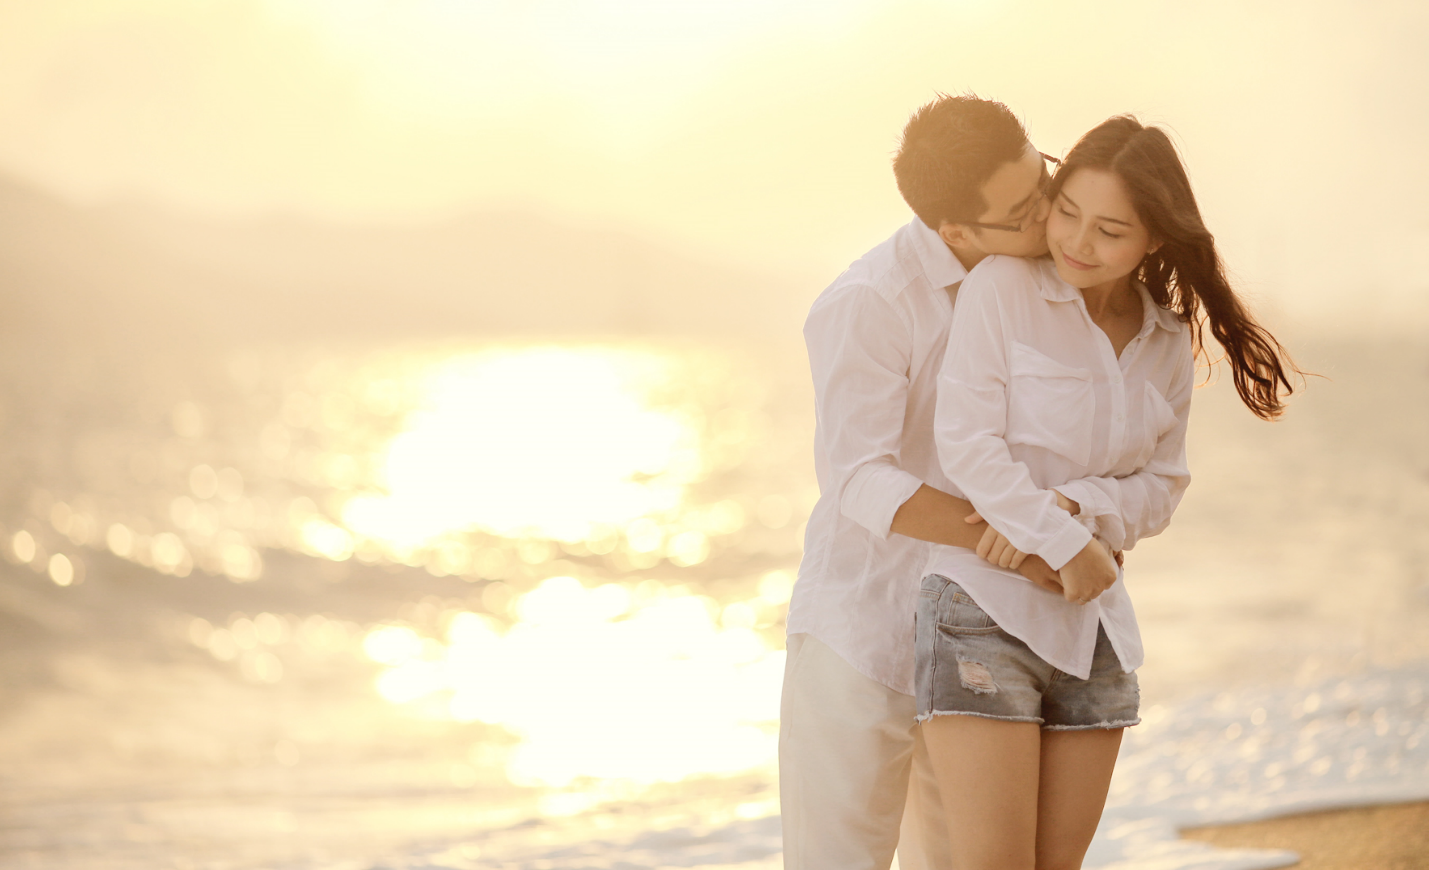 12 tuyệt chiêu hẹn hò giúp phụ nữ trói chặt trái tim đàn ông(Tiếp theo) | hentocdo.vn